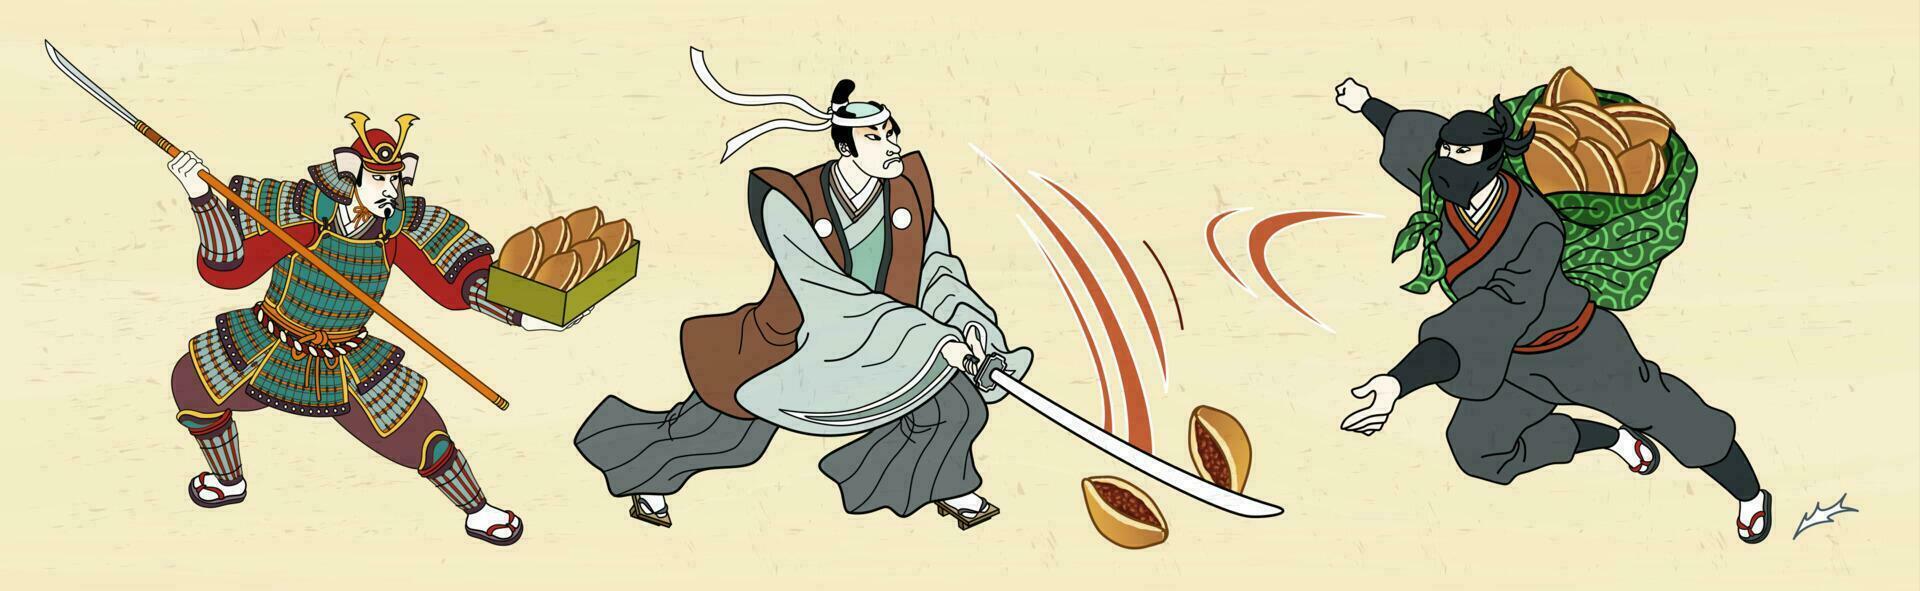 japonés general y ninja luchando con dorayaki en ukiyo-e estilo vector